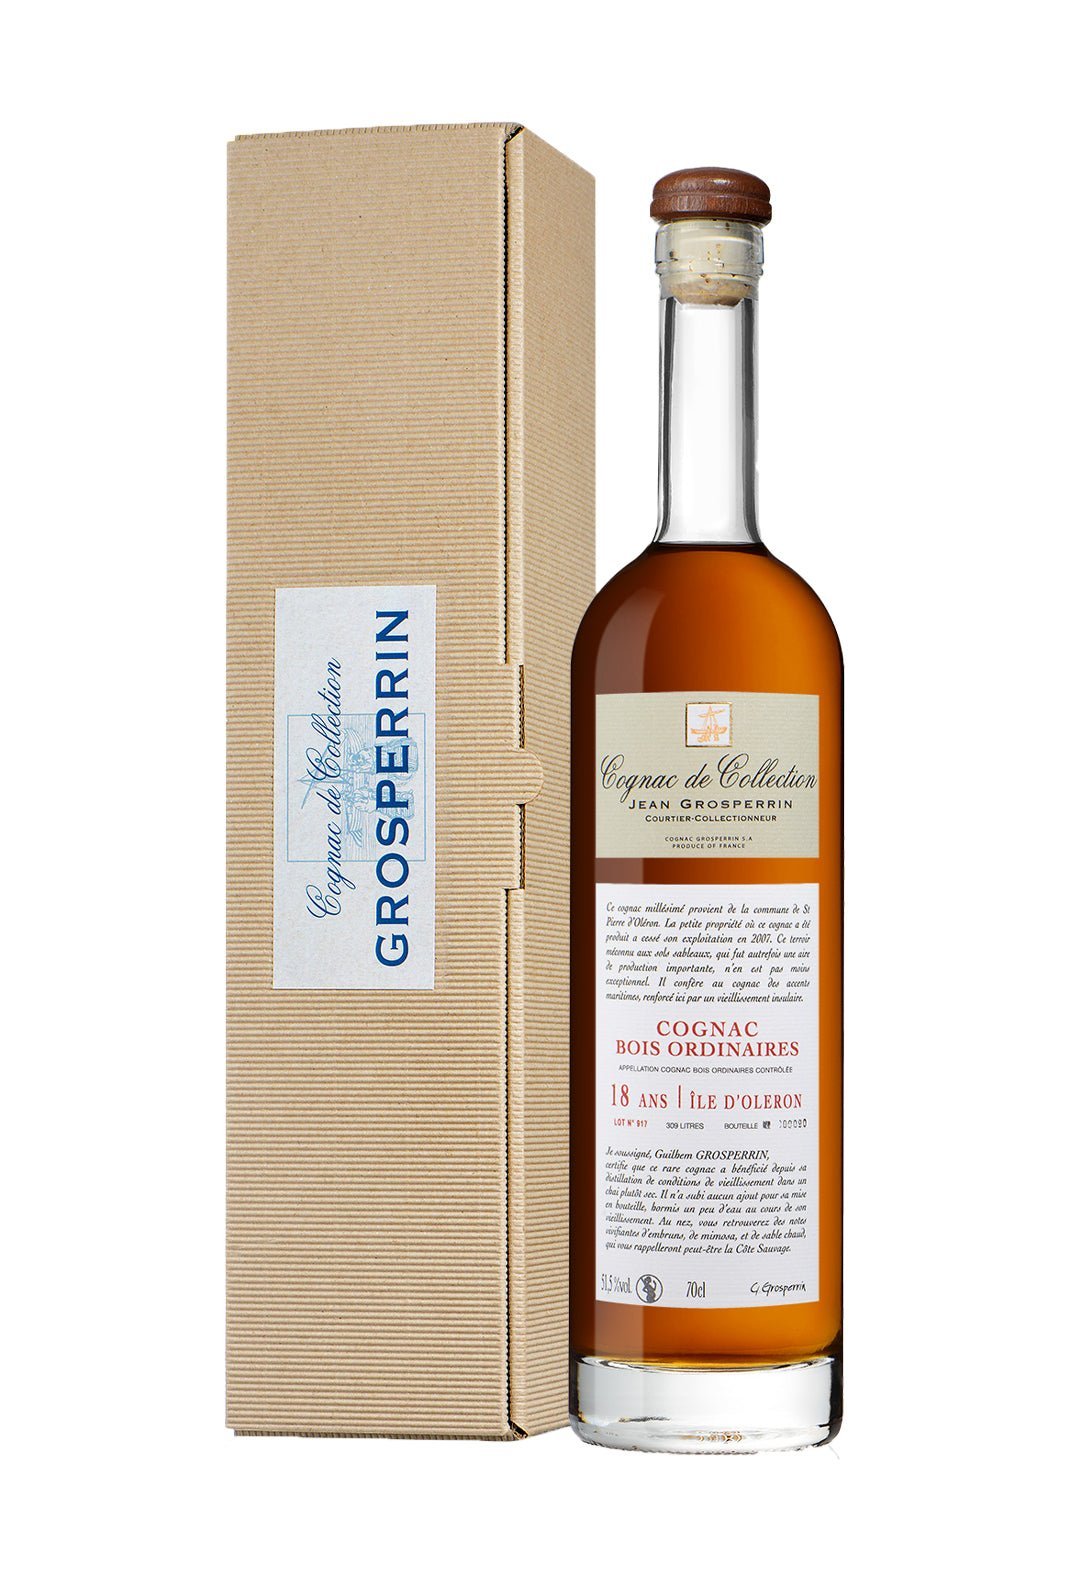 Grosperrin 18 years Bois Ordinaries Cognac 51.5% 700ml | Brandy | Shop online at Spirits of France